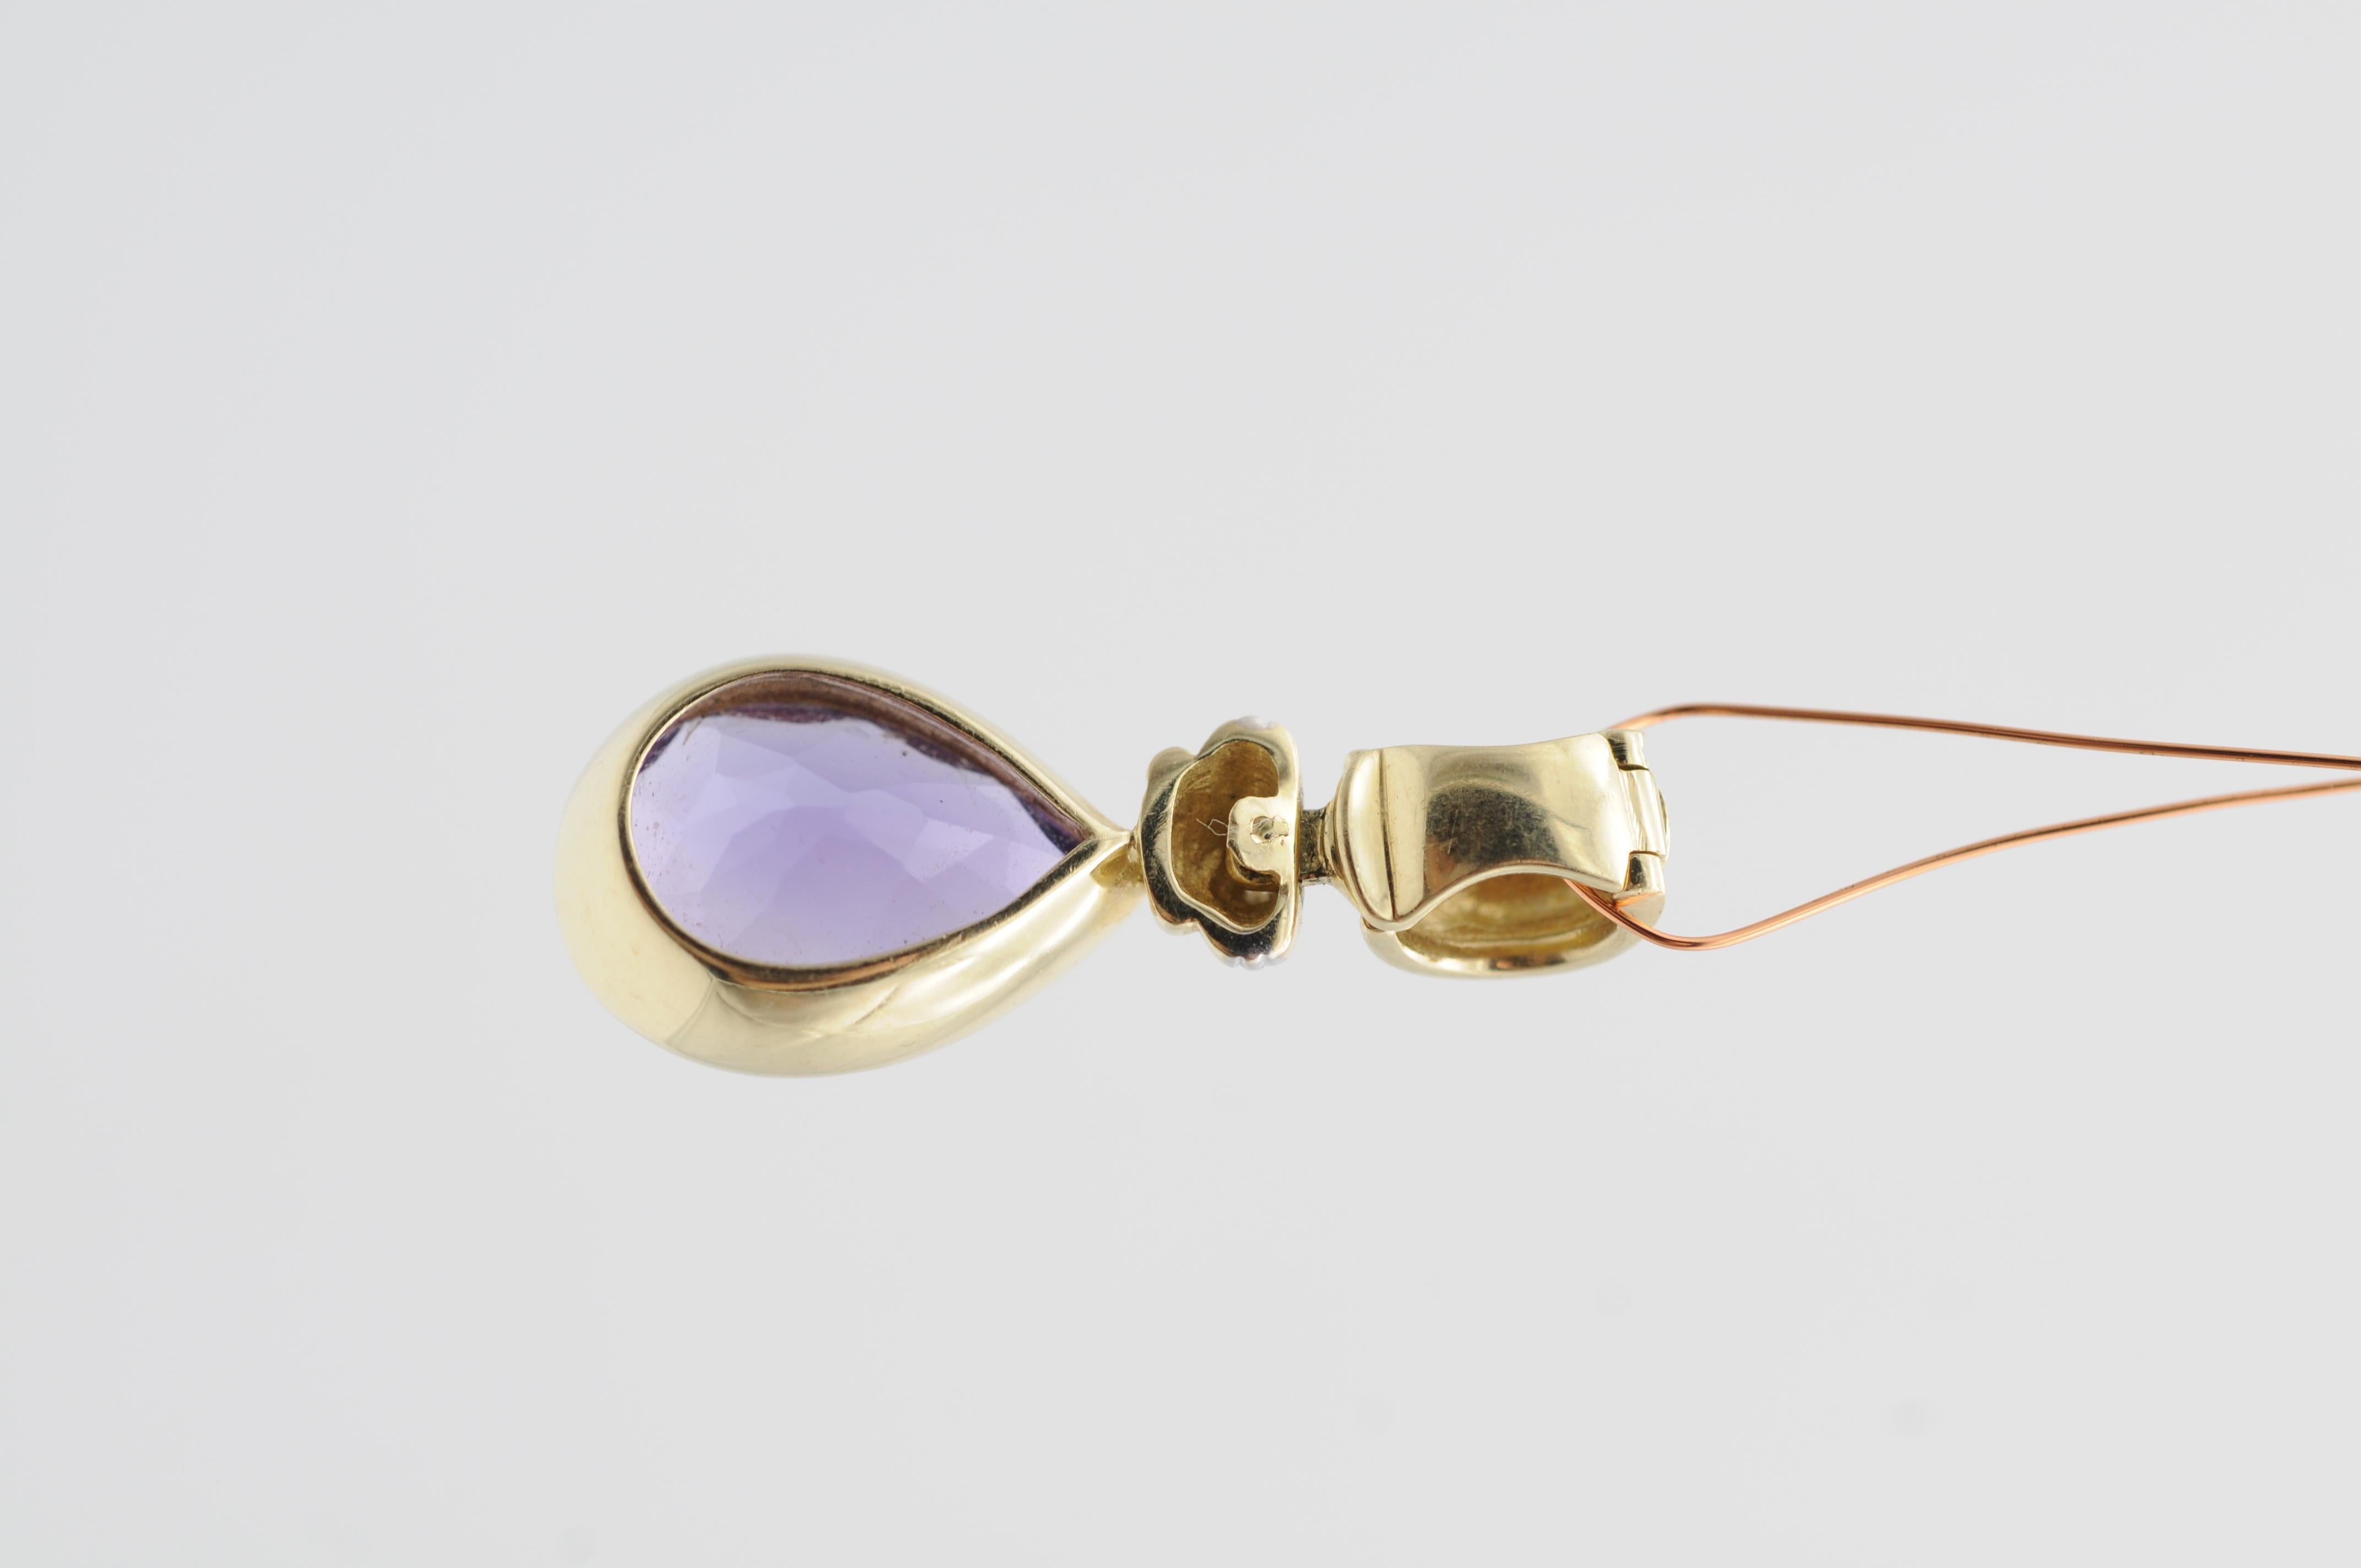 Modern Teardrop Shaped Amethyst Pendant, 14k Yellow Gold For Sale 5